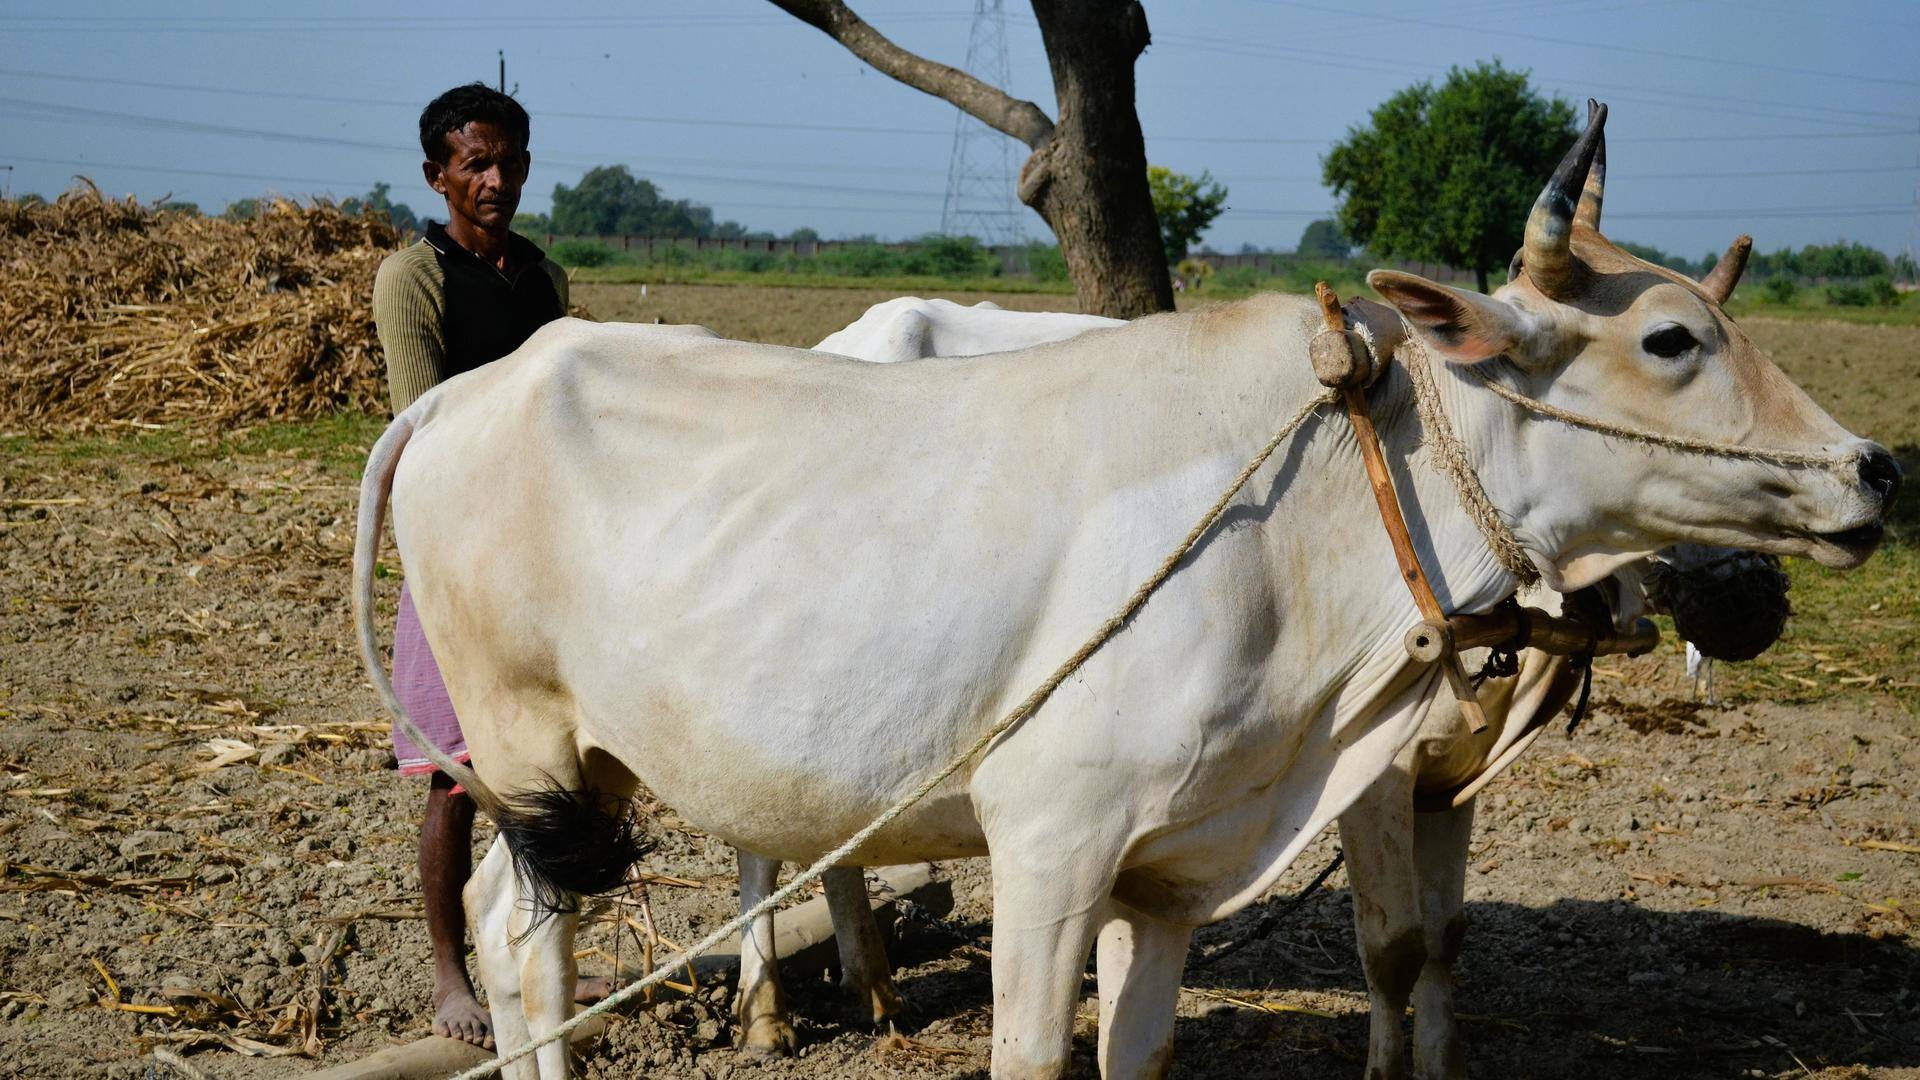 Centre withdraws controversial livestock bill amid massive backlash